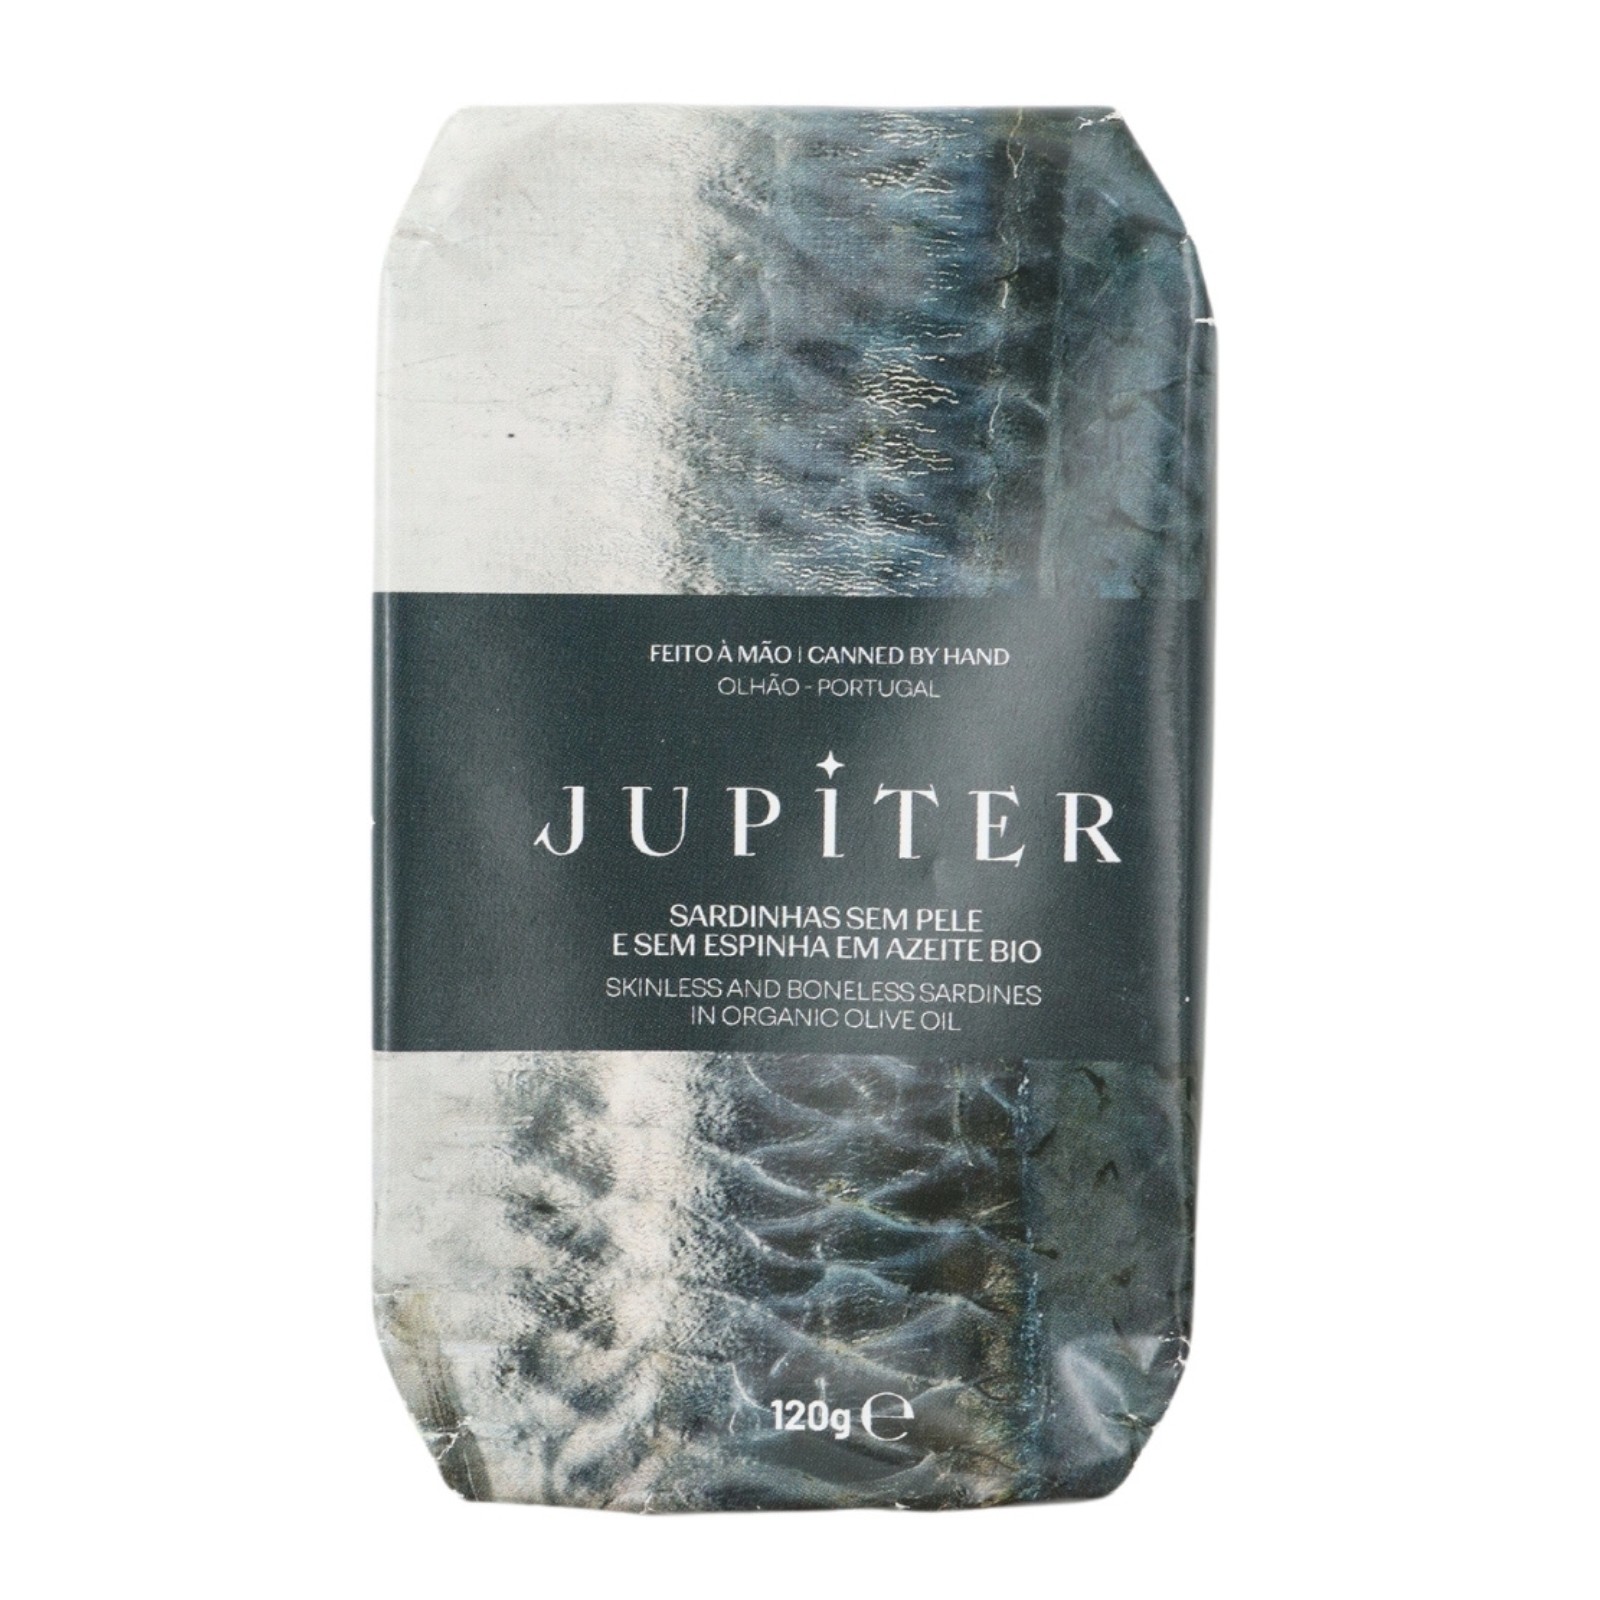 Jupiter Sardinen ohne Knochen und ohne Haut in Bio-Olivenöl